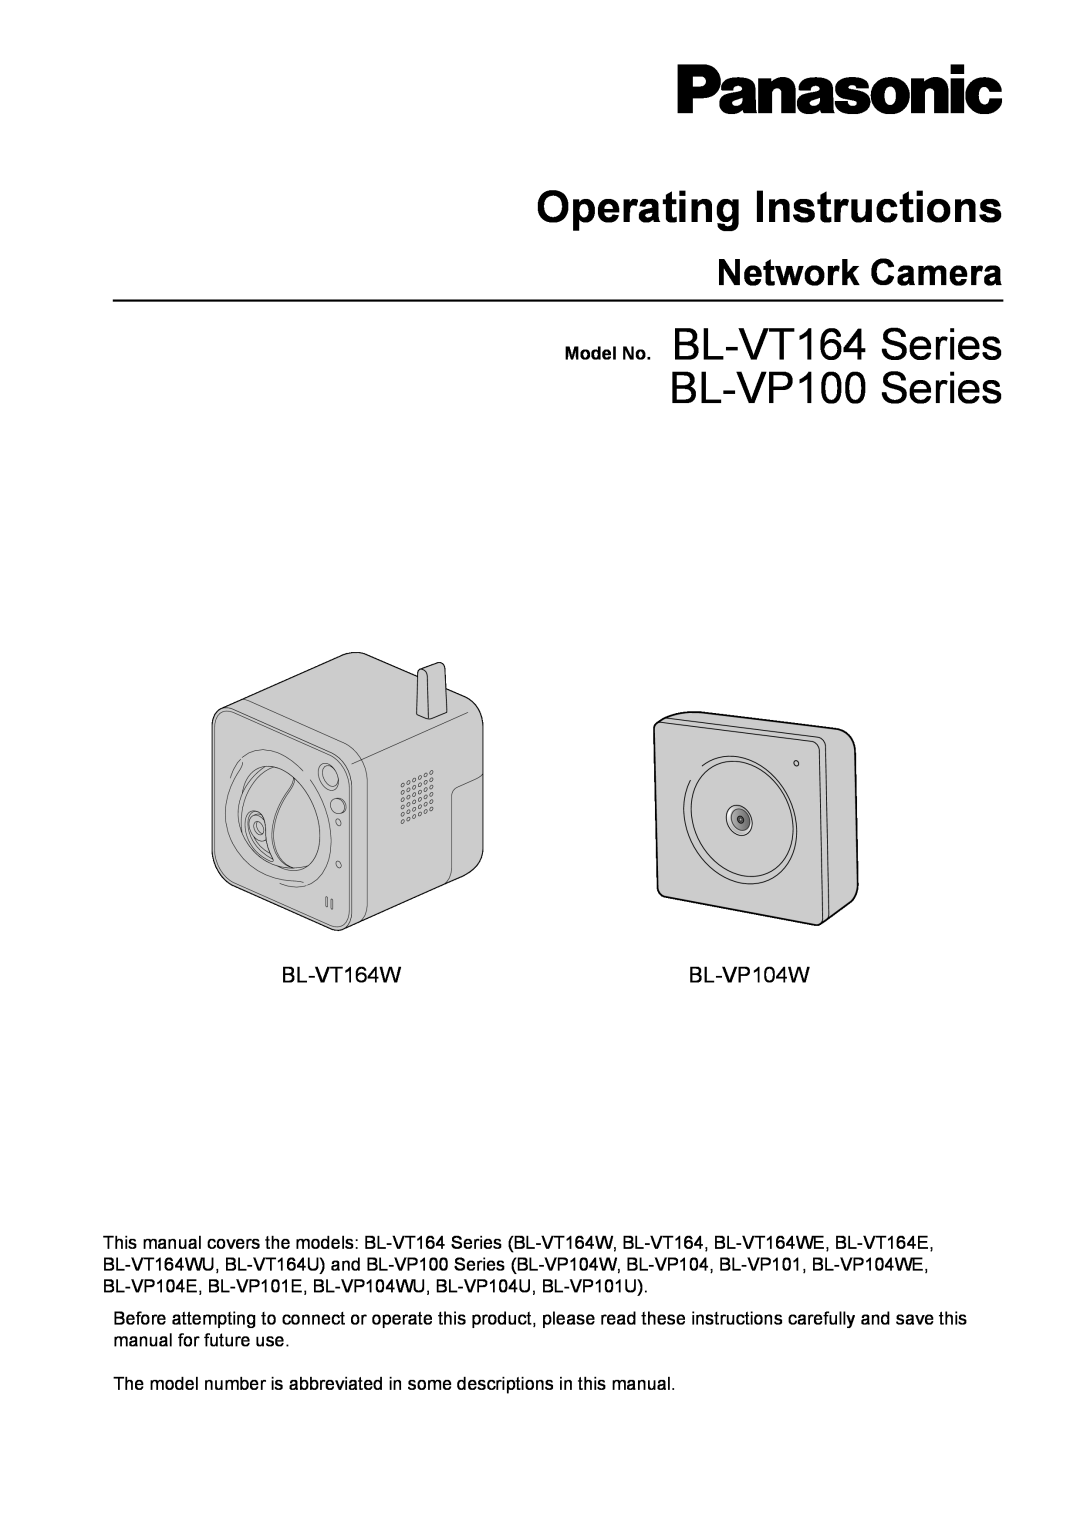 Panasonic manual Network Camera, BL-VT164WBL-VP104W, Operating Instructions, Model No. BL-VT164Series BL-VP100Series 